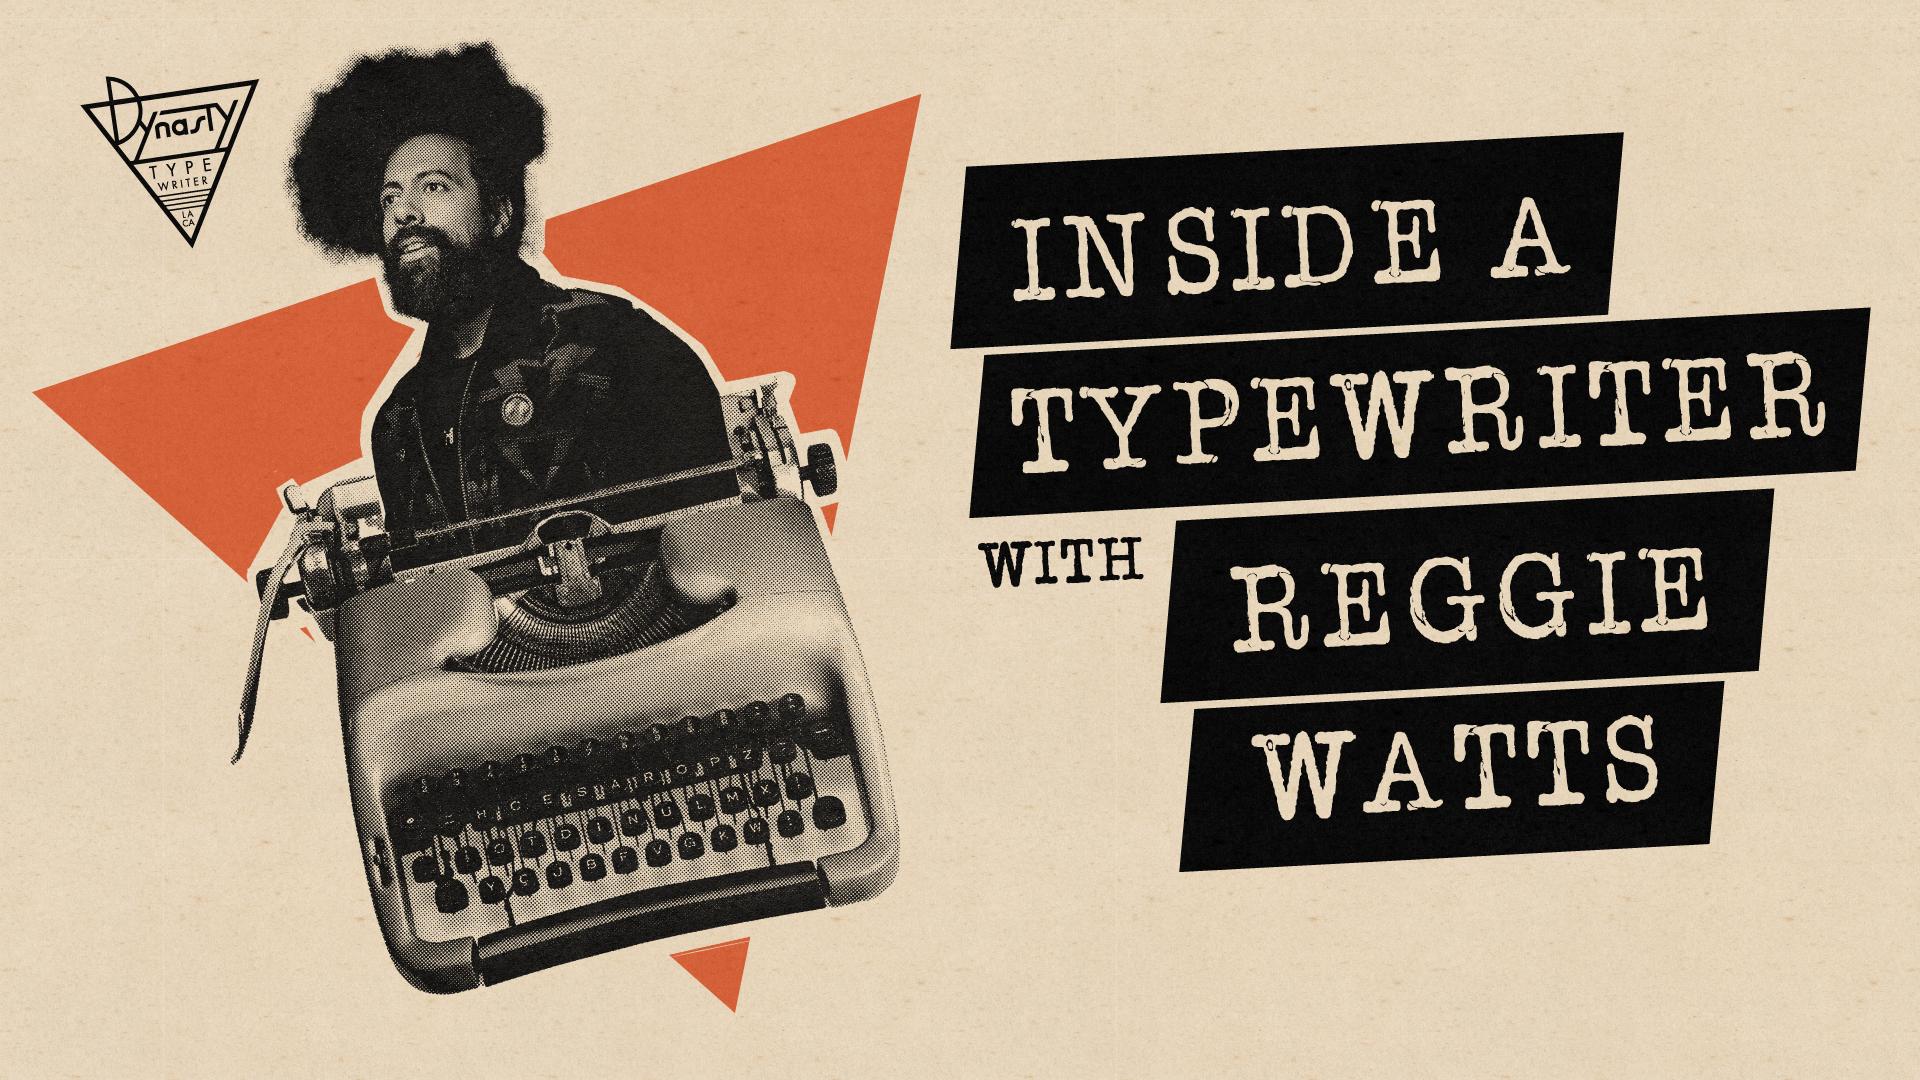 Inside A Typewriter with Reggie Watts